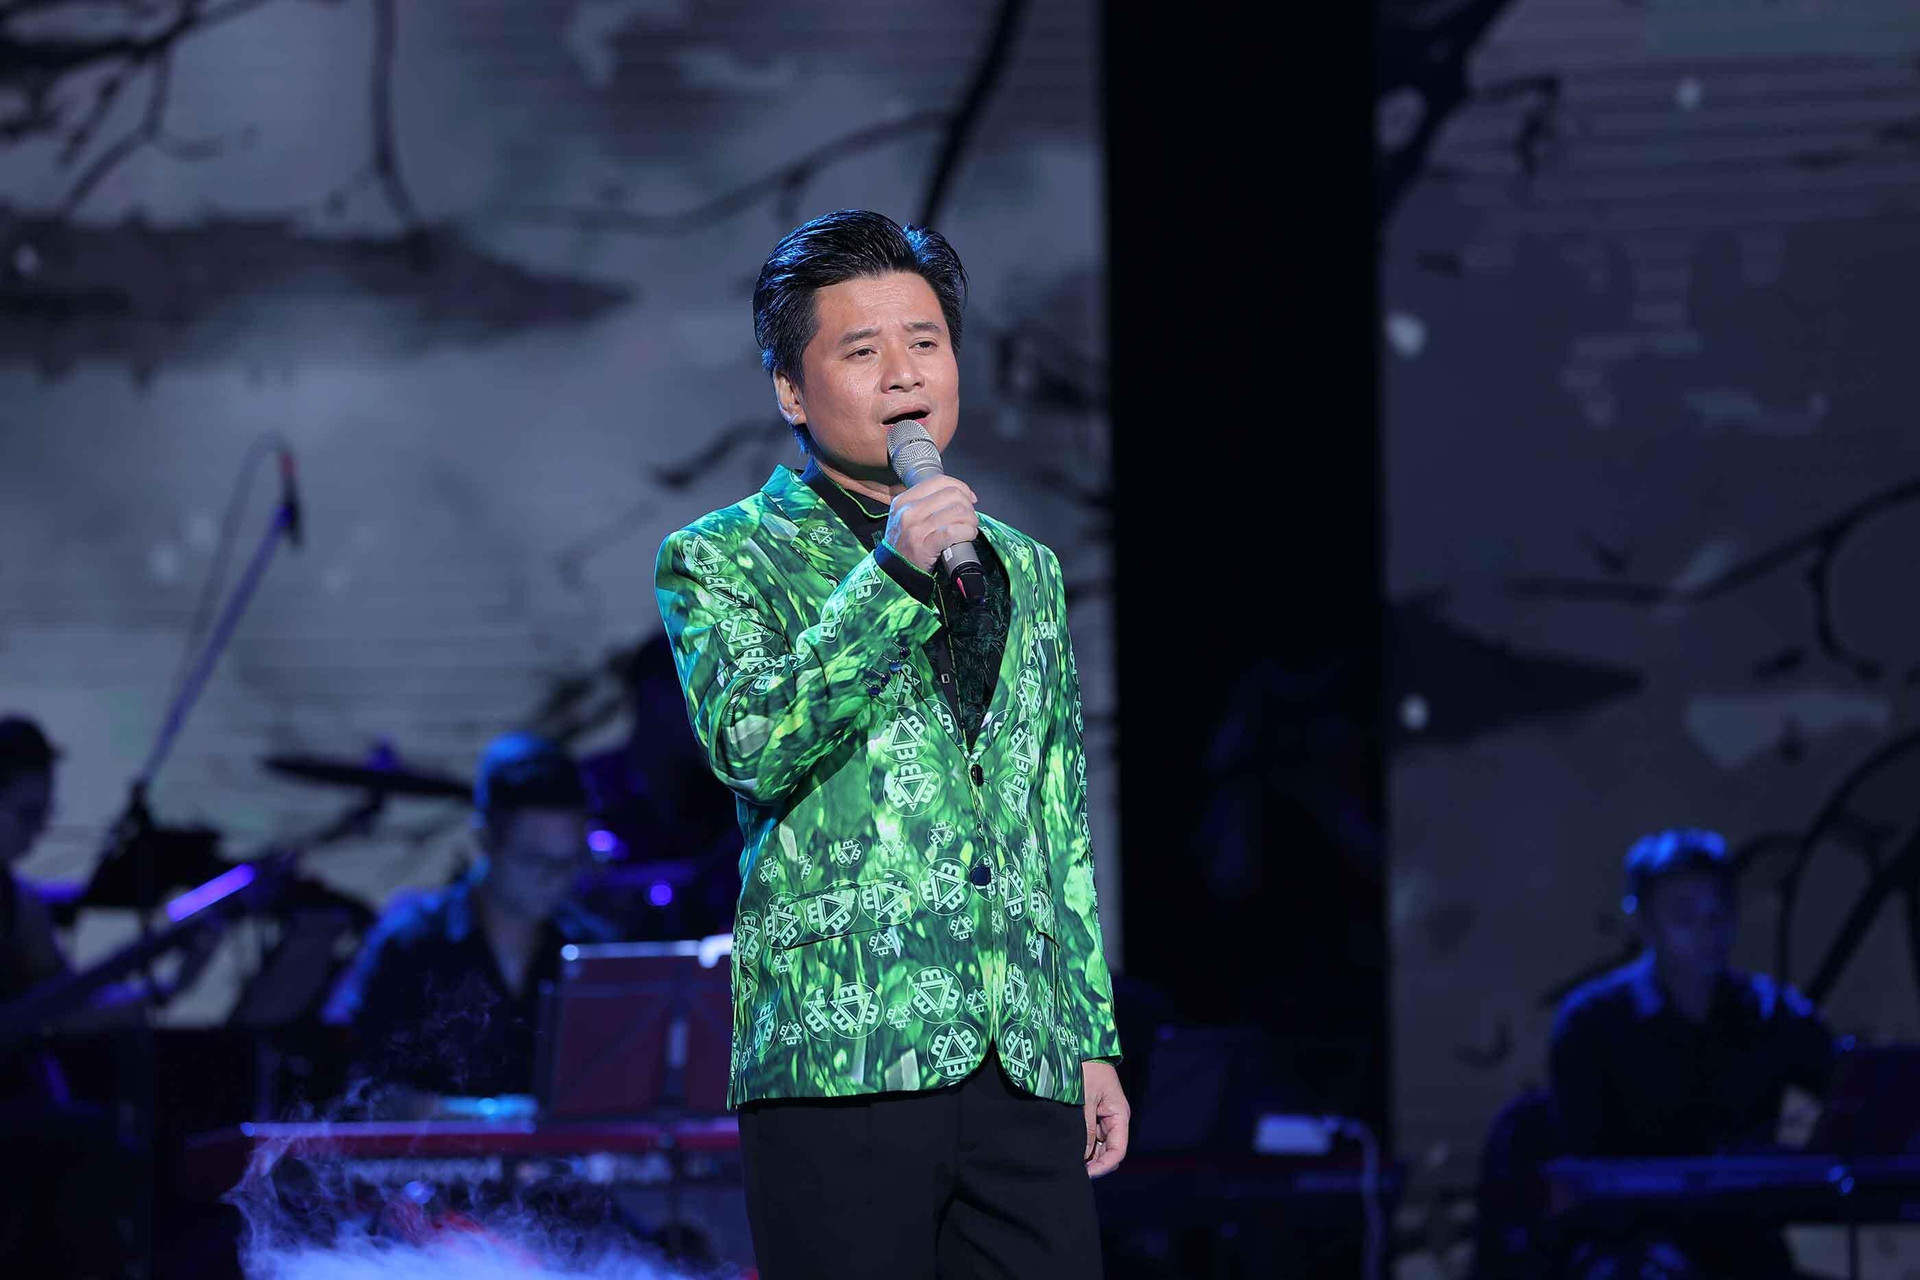 Tùng Dương hát live 'Ngày chưa giông bão', khán giả cổ vũ nồng nhiệt - 3